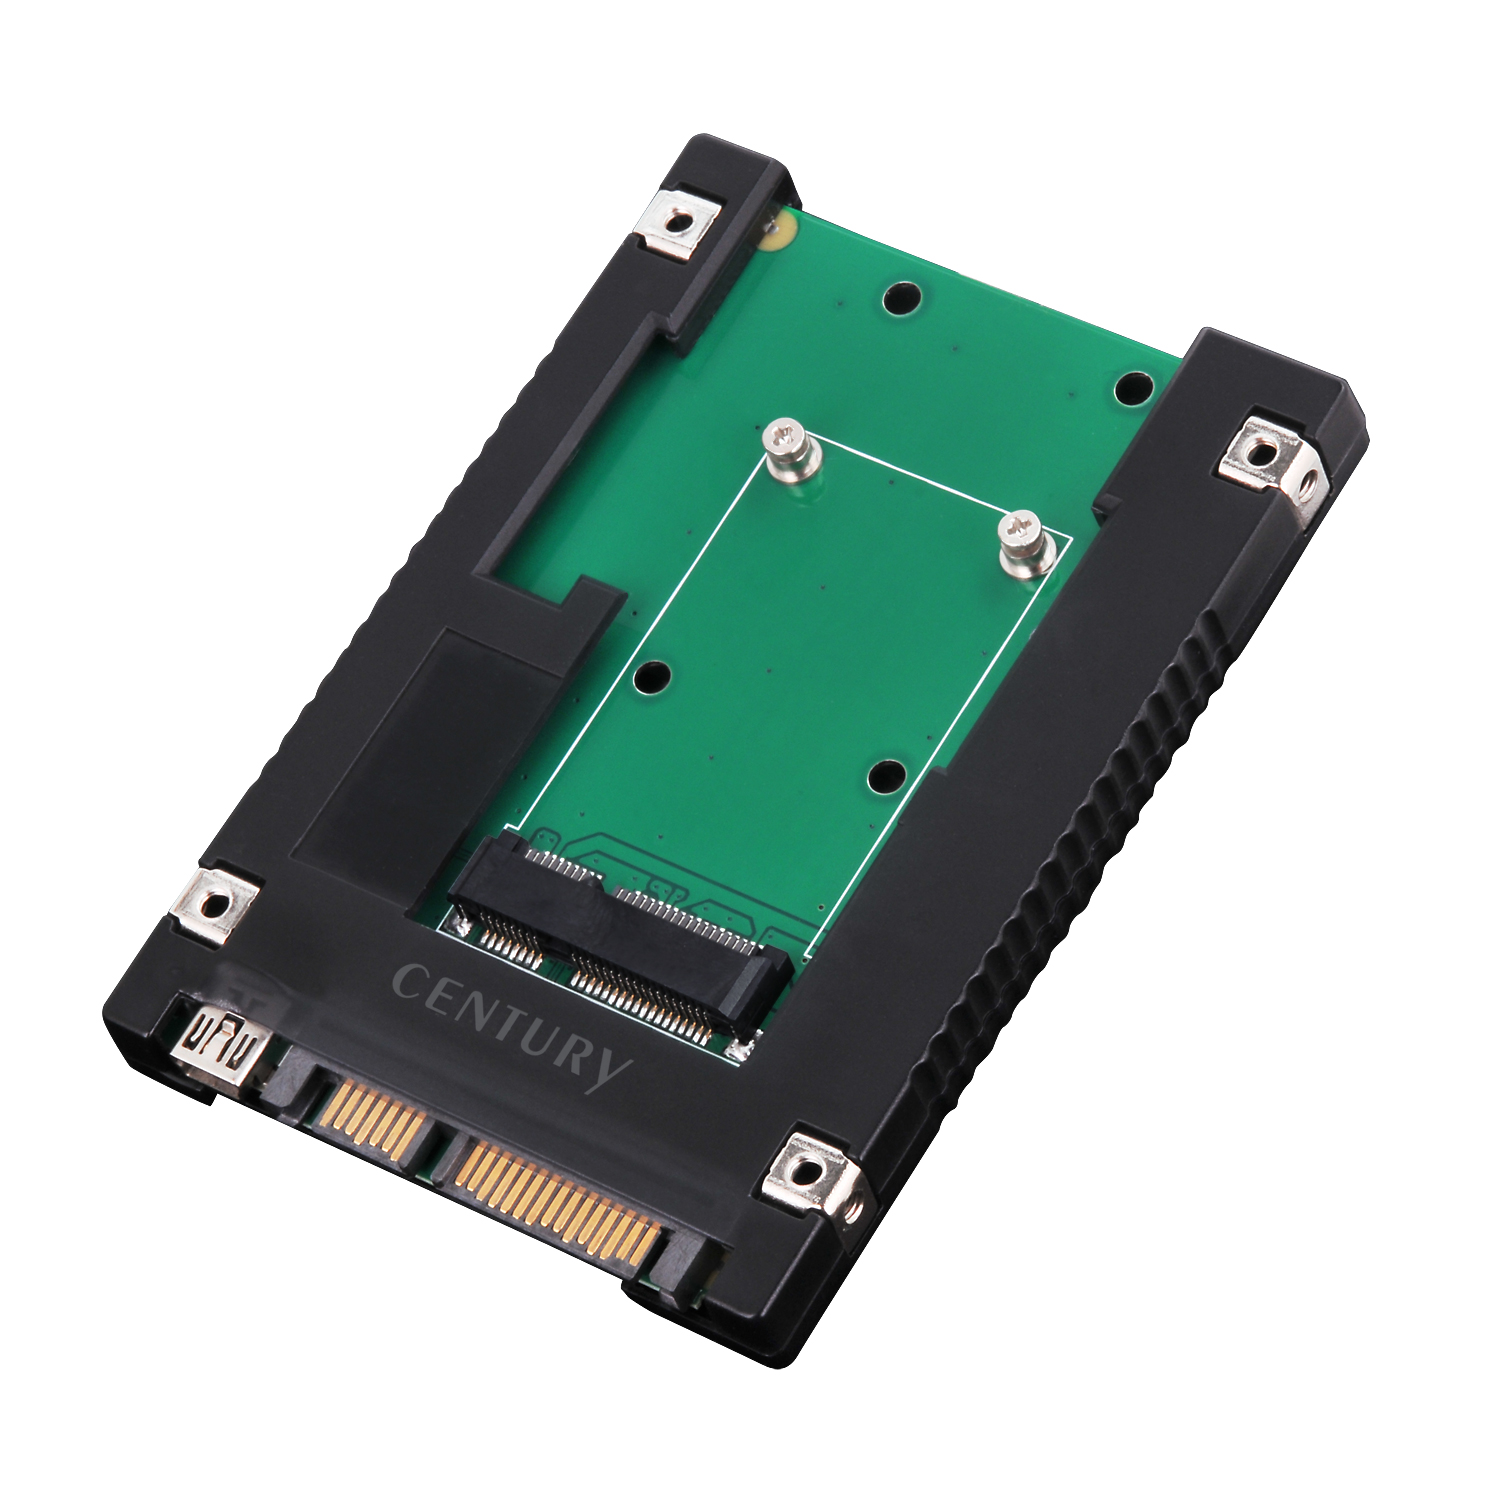 374円 【おトク】 Cablecc Mini PCI - E mSATA SSD to 2.5?SATAハードディスクエンクロージャケース変換アダプタforイン